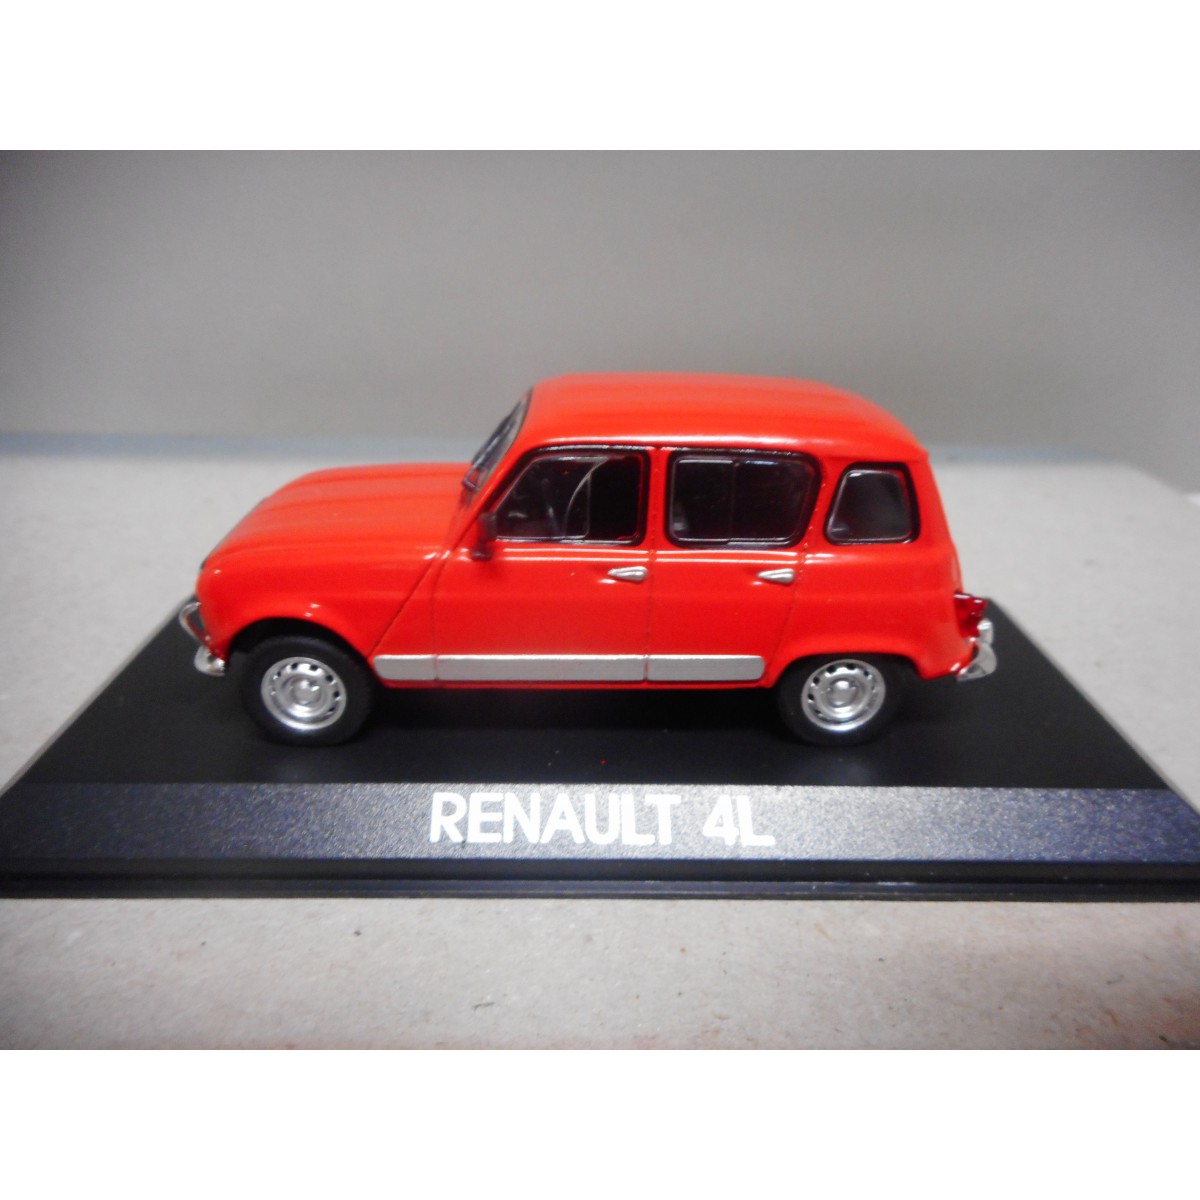 Ixo 1/43 Renault 4L Super Export Diecast Car Metal Toy Models